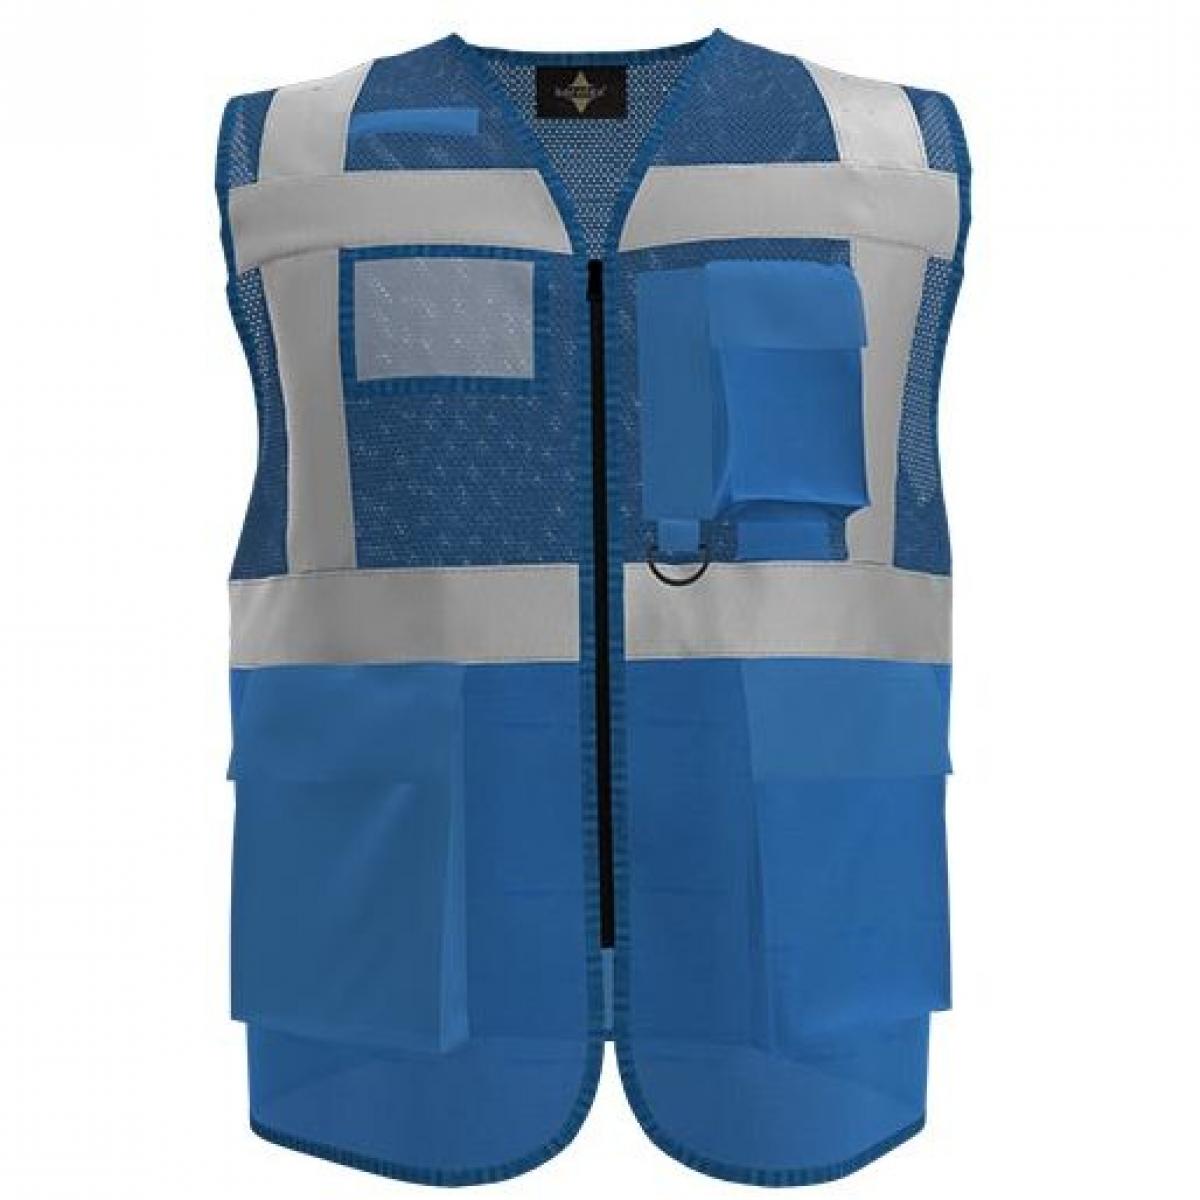 Hersteller: Korntex Herstellernummer: KXEXQ Artikelbezeichnung: Multifunkitons-Warnweste Mesh Multifunction Vest Farbe: Navy